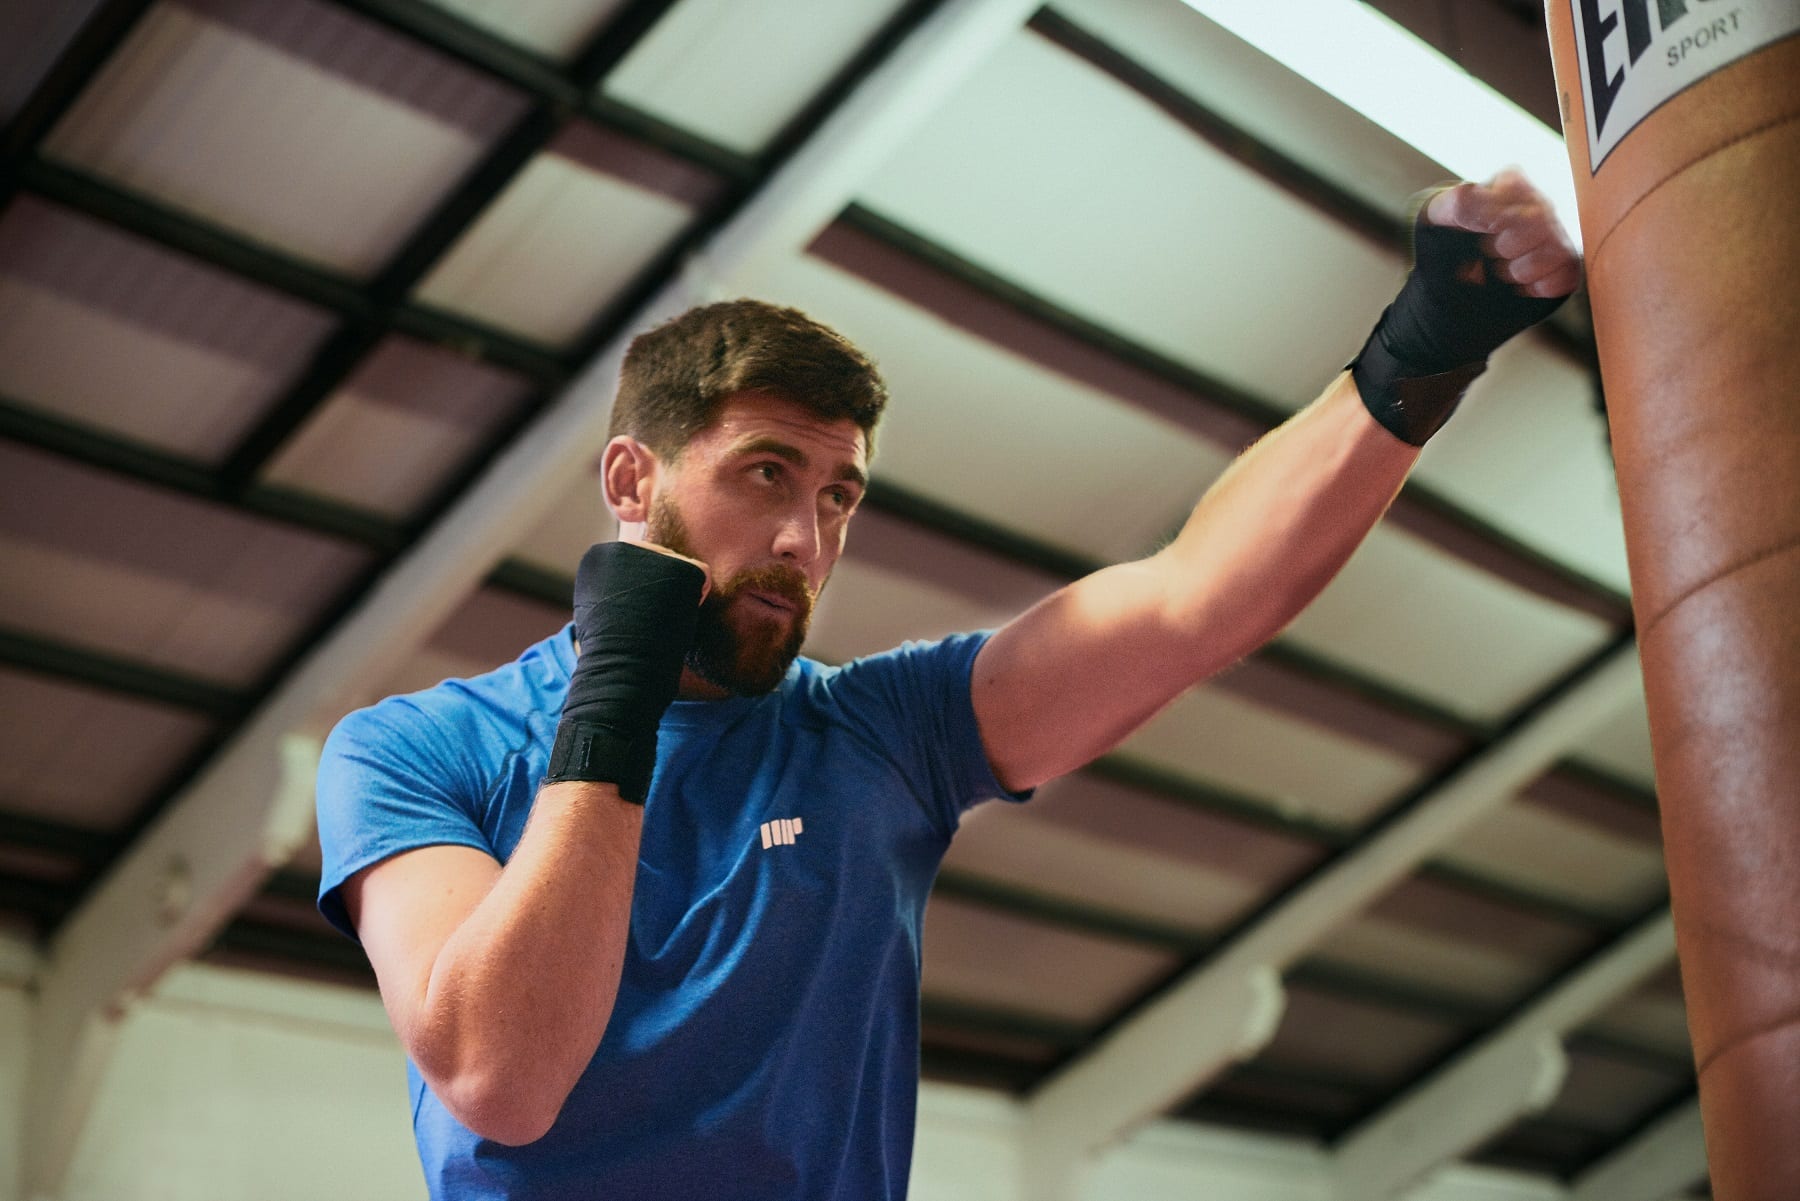 Boxe & Musculation – Les Bienfaits du renforcement musculaire pour le boxeur